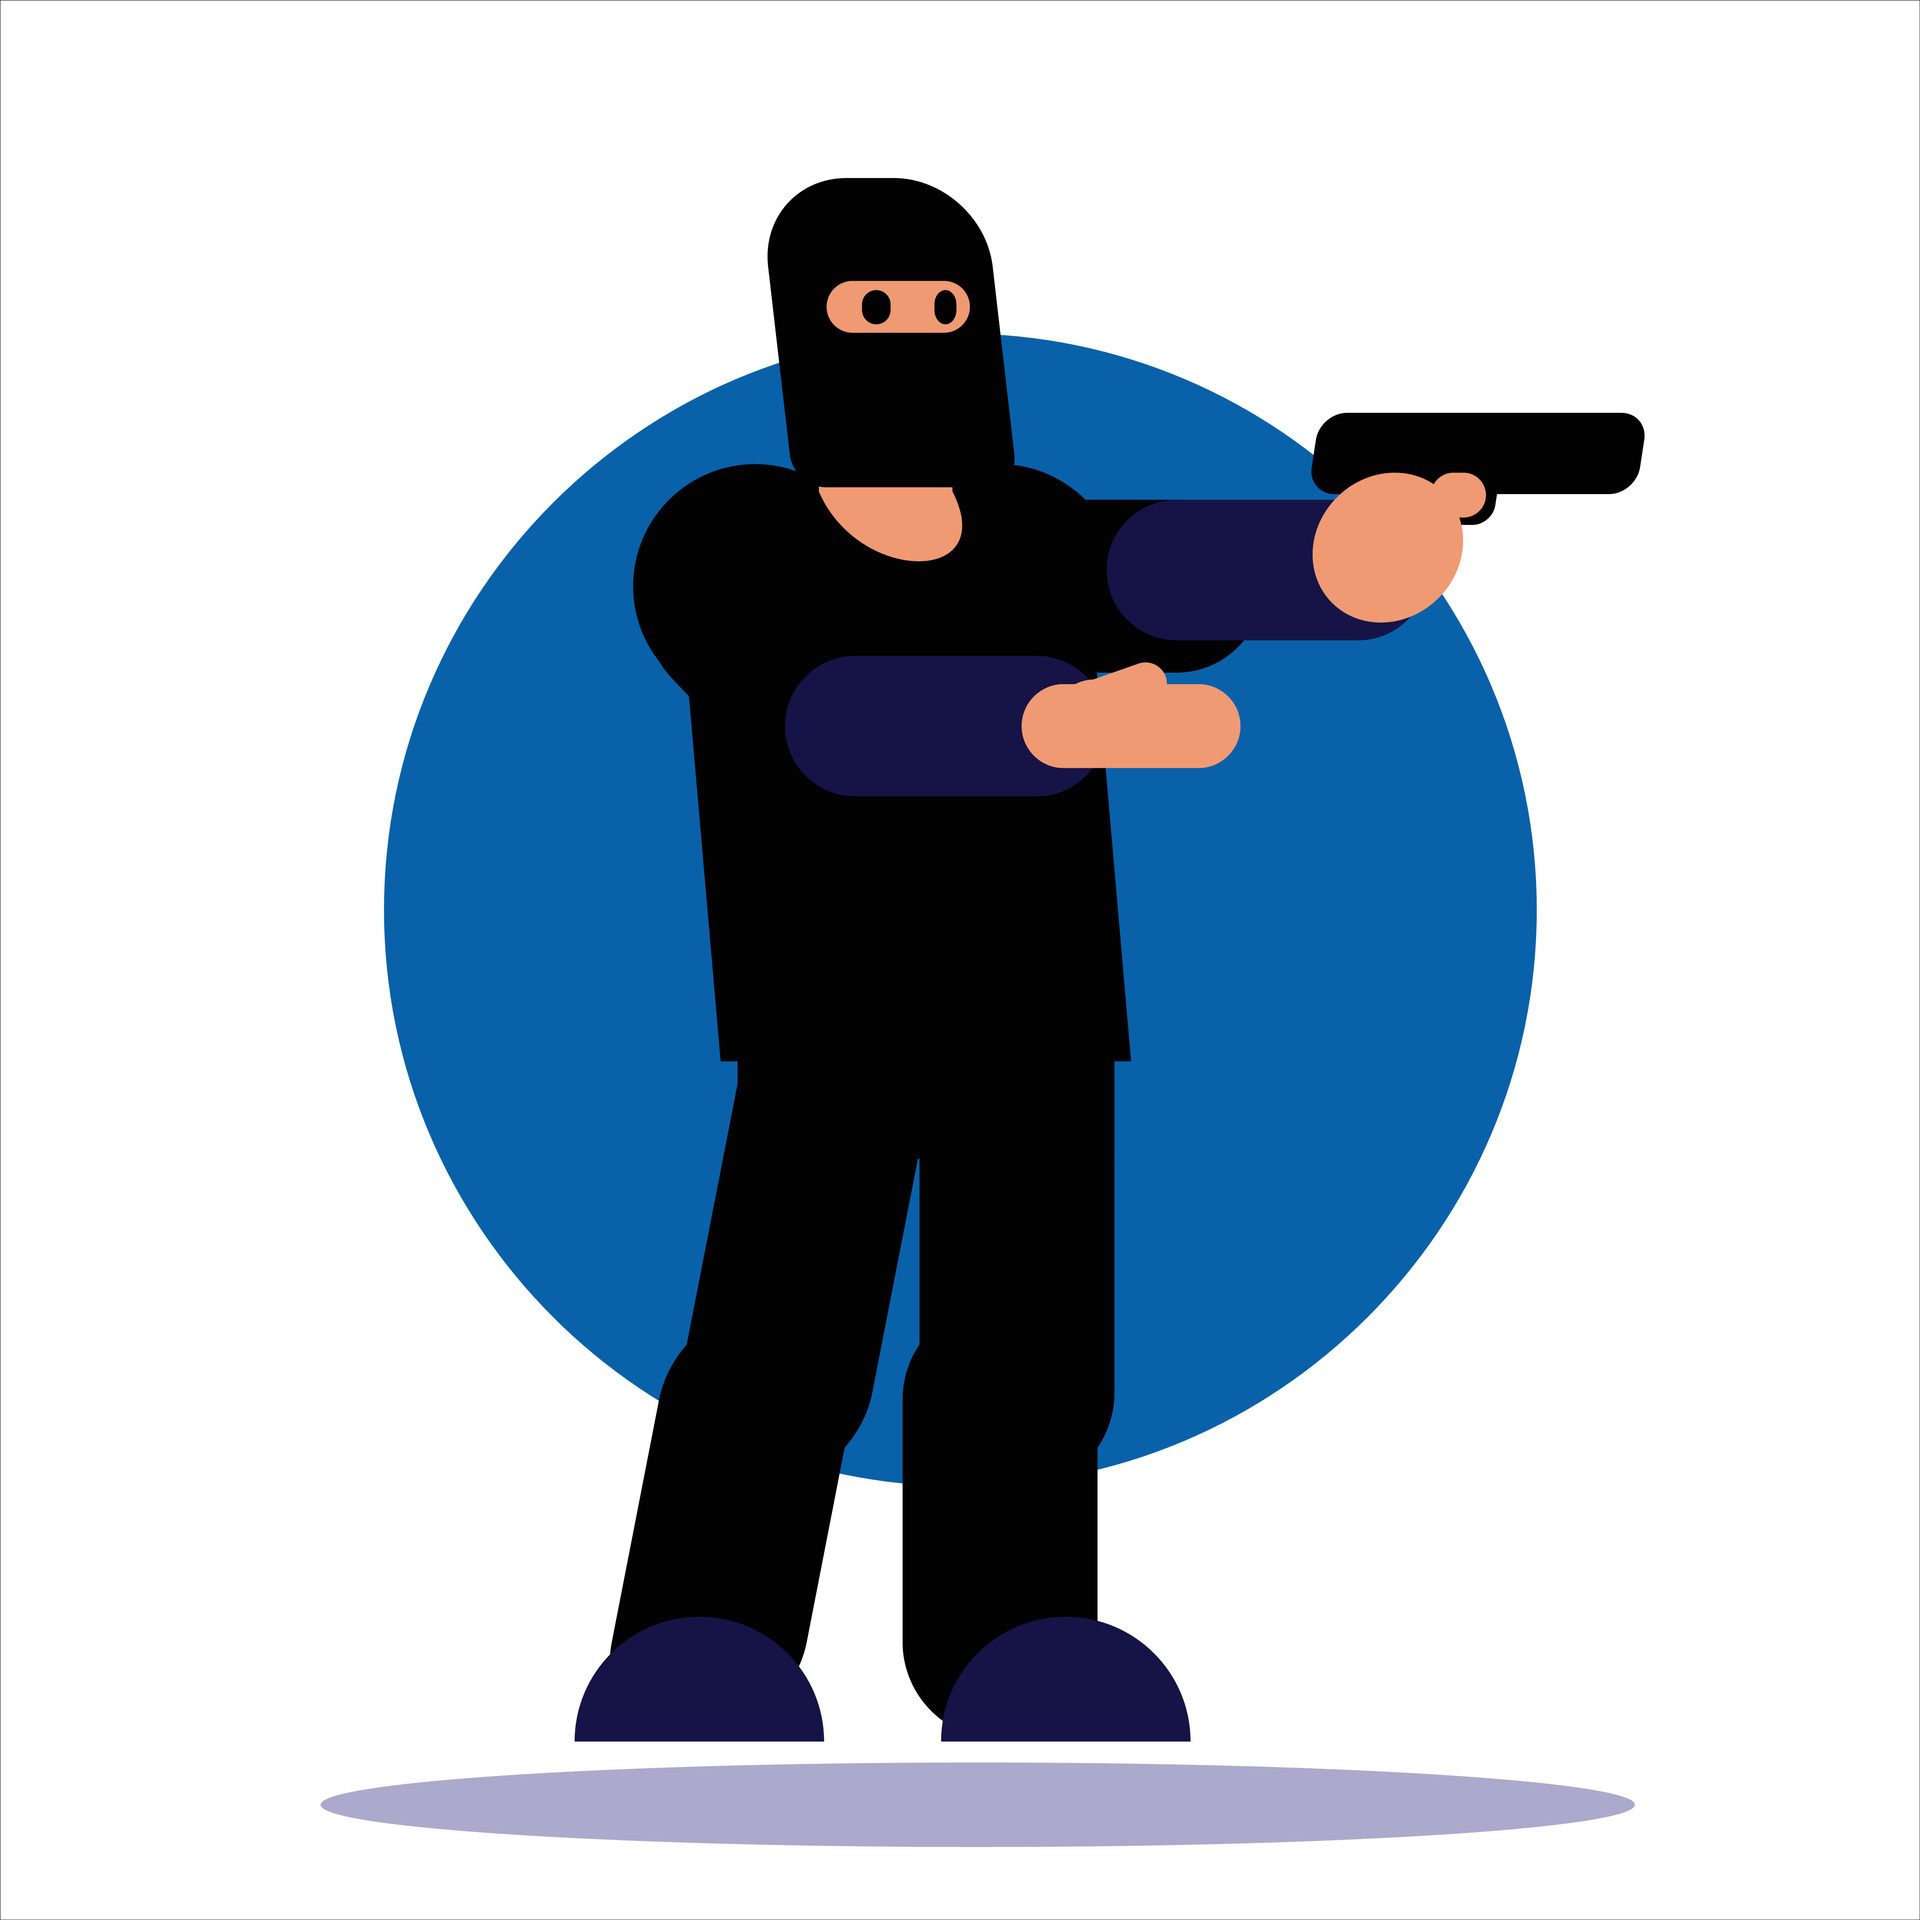 Image of a robber vector design with a gun 26360593 Vector Art at Vecteezy